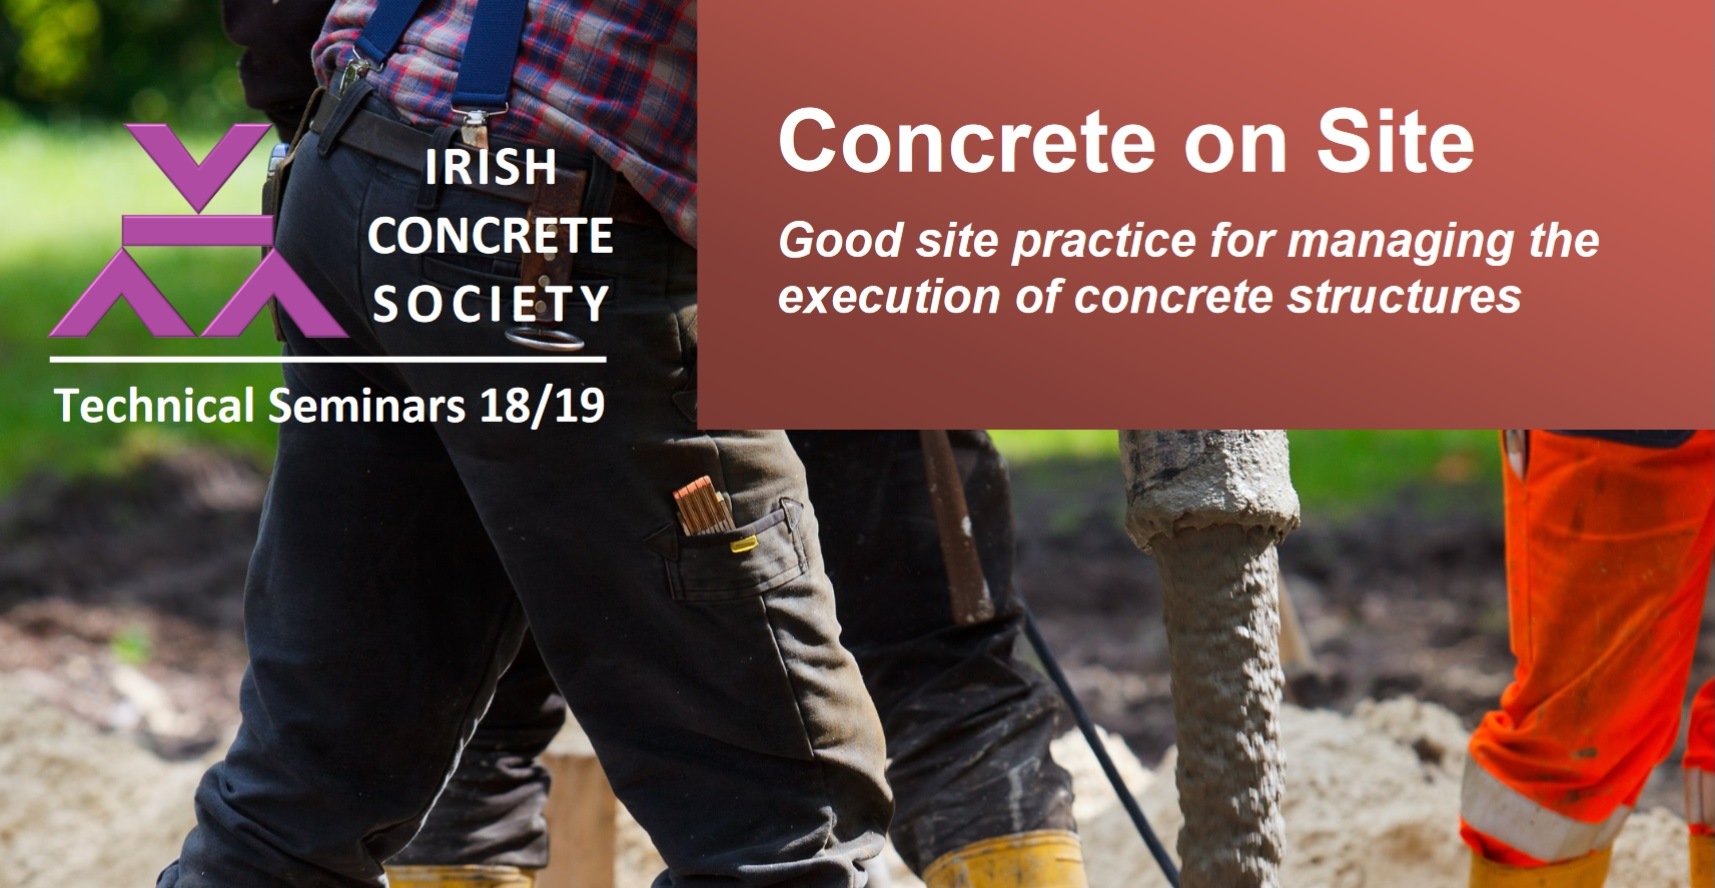 New Technical Seminar - Concrete on site - The Irish Concrete Society